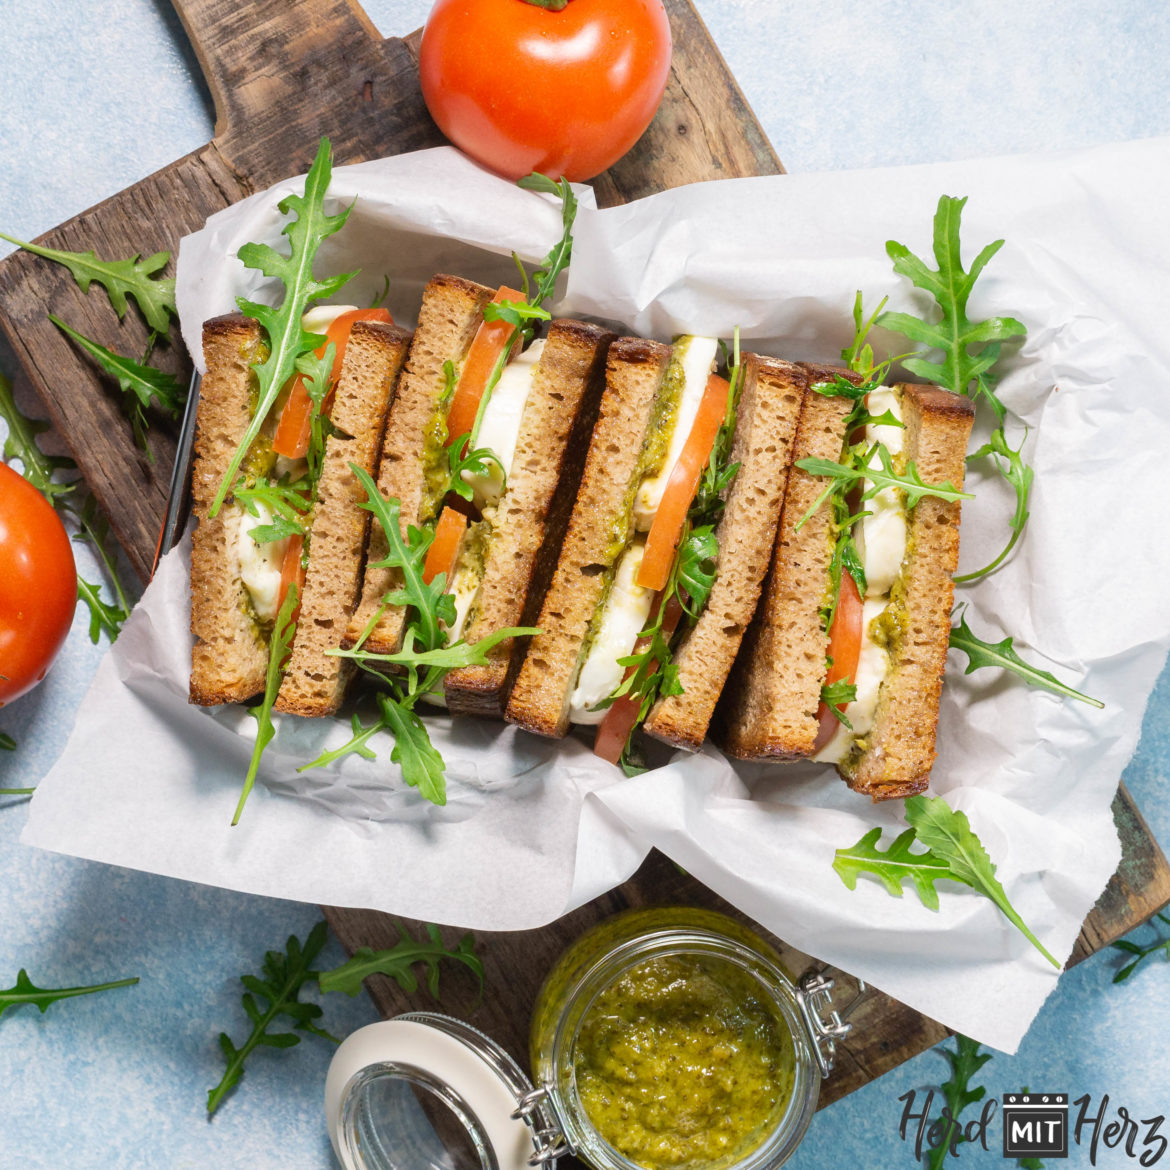 Grilled Tomato Mozzarella Sandwich with Basil Pesto – HerdmitHerz